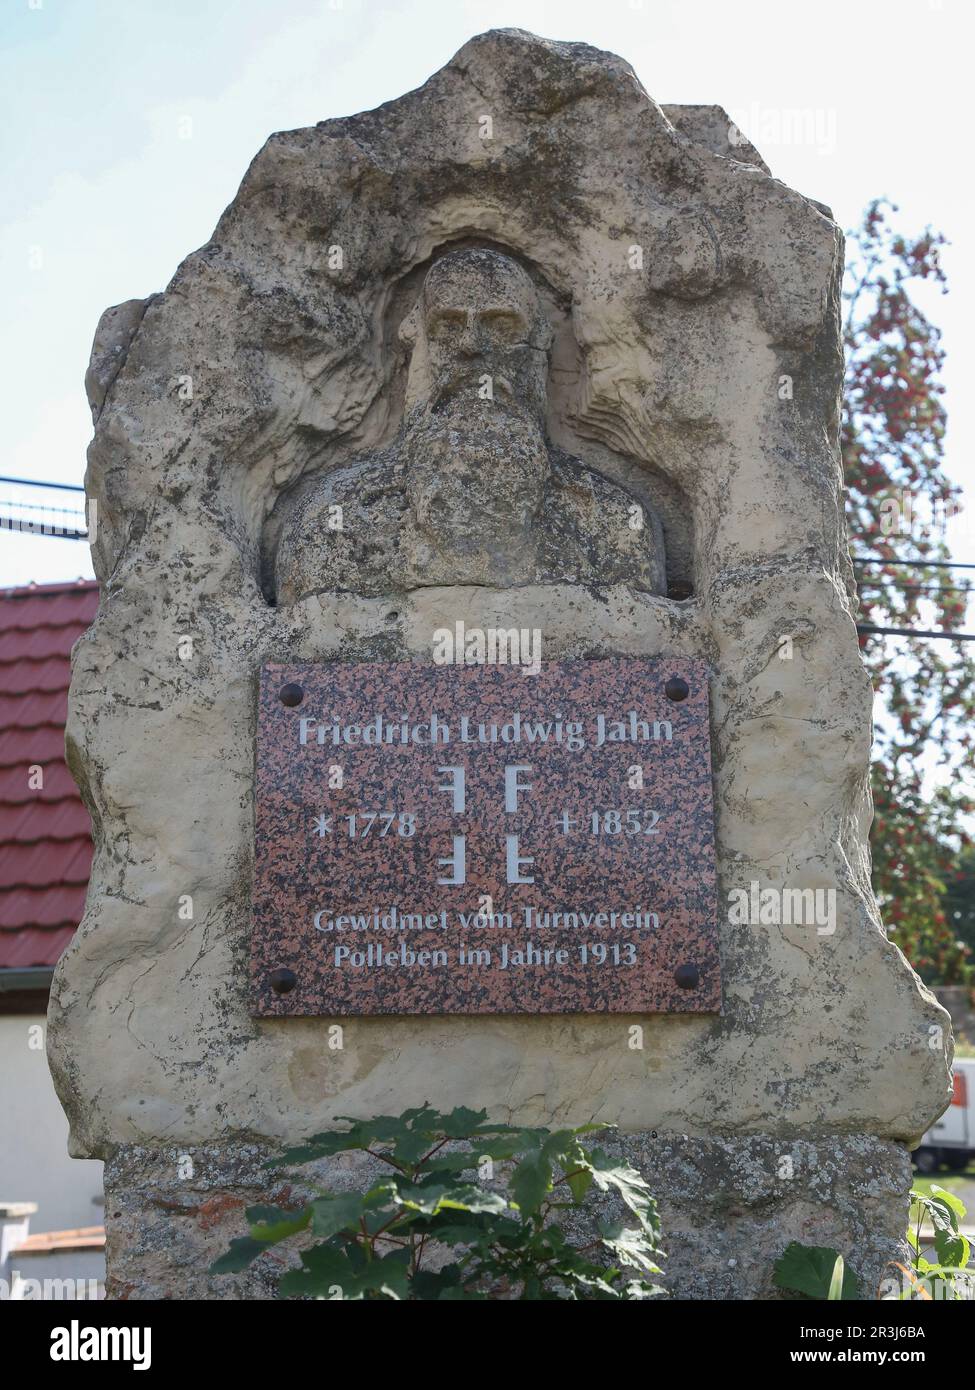 Friedrich-Ludwig-Jahn-Denkmal am Jahnplatz in Polleben Stockfoto